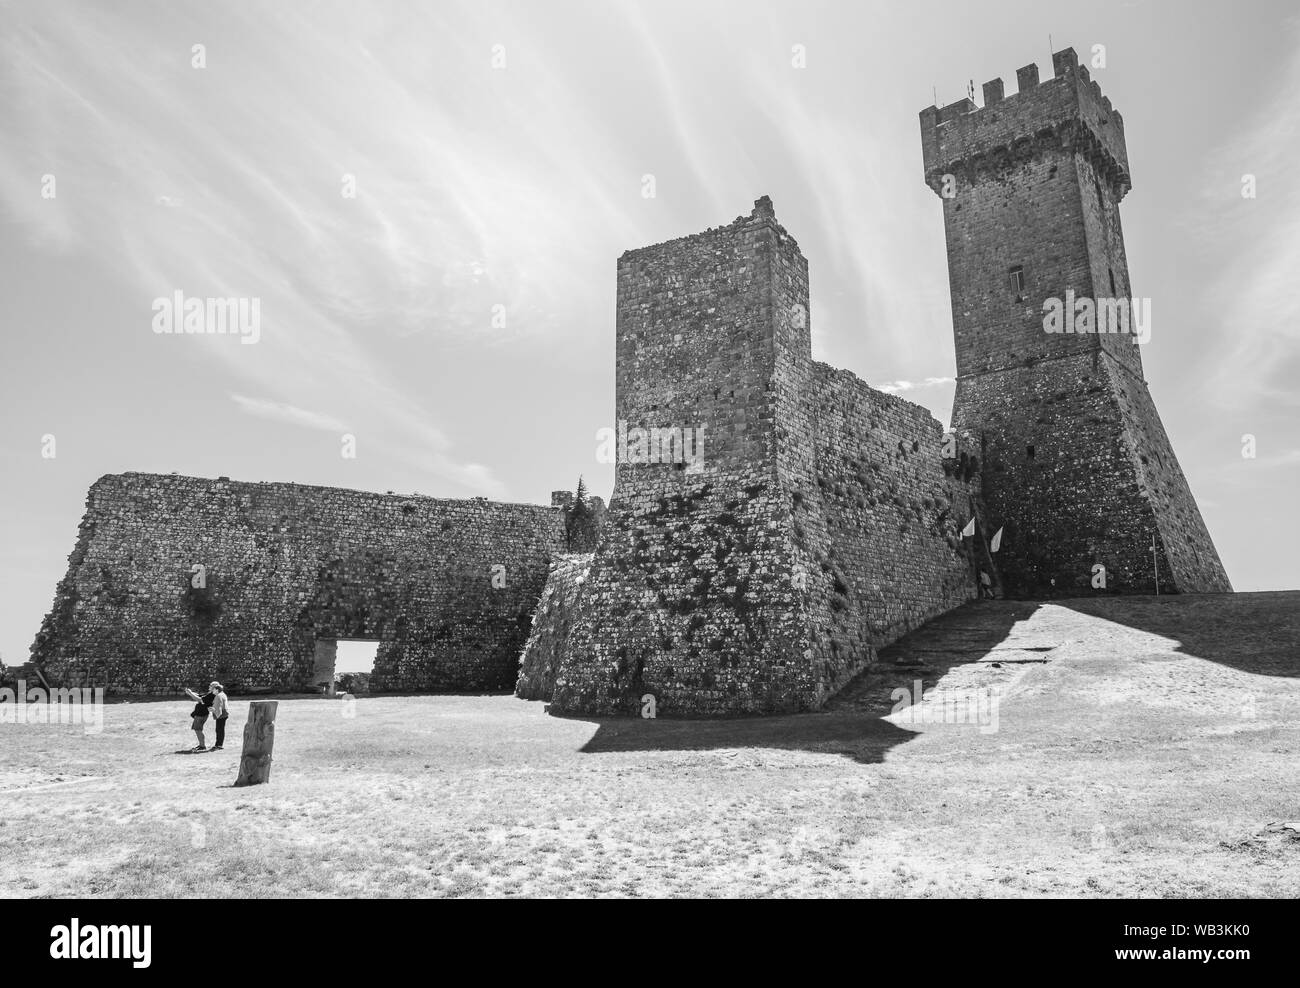 Radicofani (Italie) - La vue de la cité médiévale et renaissance sur le Val d'Orcia, célèbre pour les ruines d'un vieux château, région de Toscane, province Sienne Banque D'Images